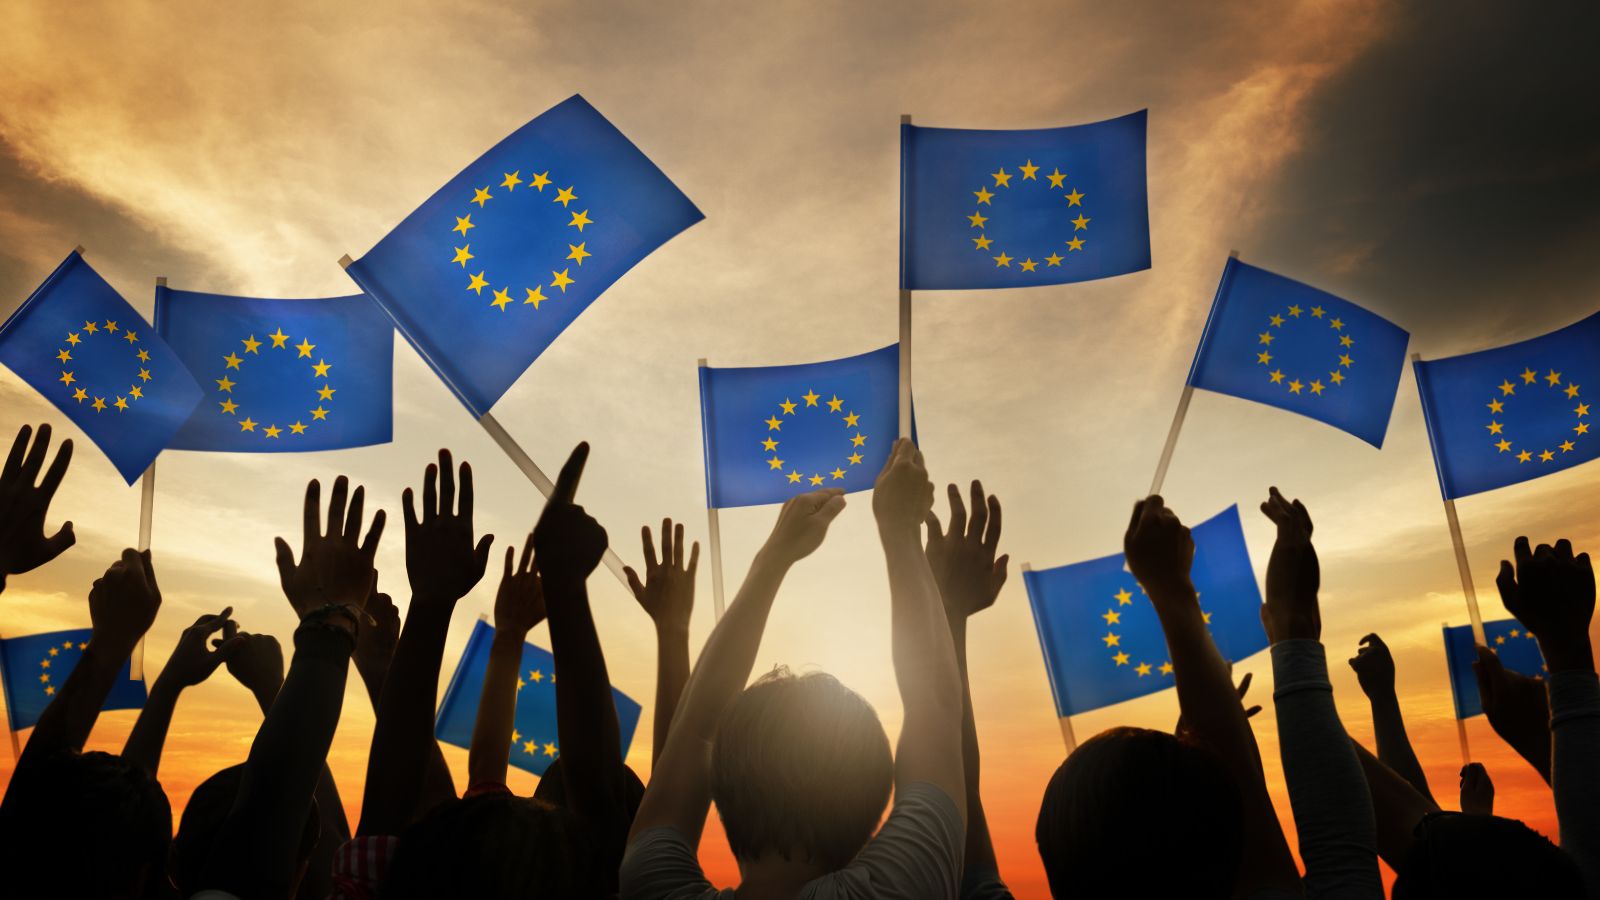 Das Bild zeigt eine Gruppe Menschen, die mit kleinen Europa-Flaggen wedeln.